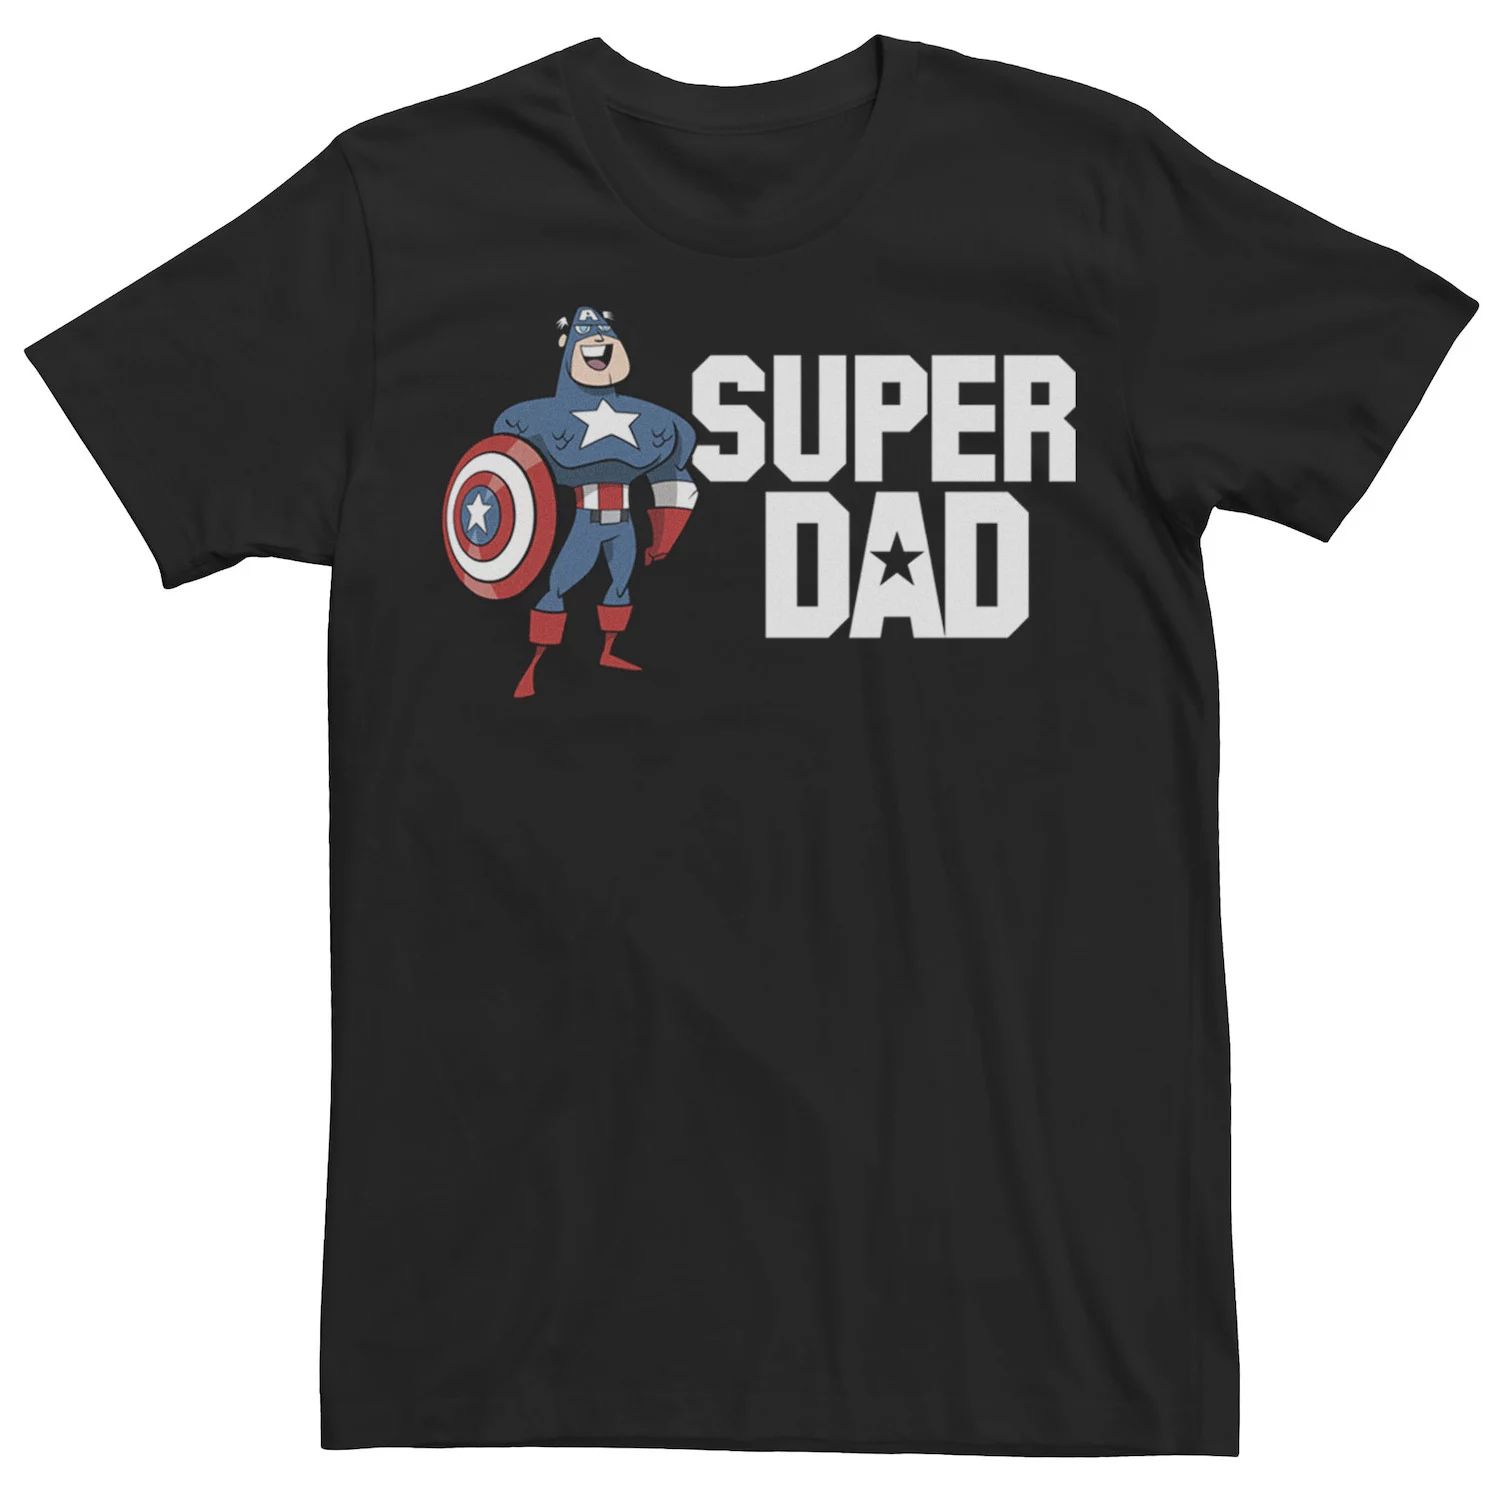 Мужская футболка с портретом Капитана Америки и Суперпапы на День отца Marvel тетрадь для суперпапы марка